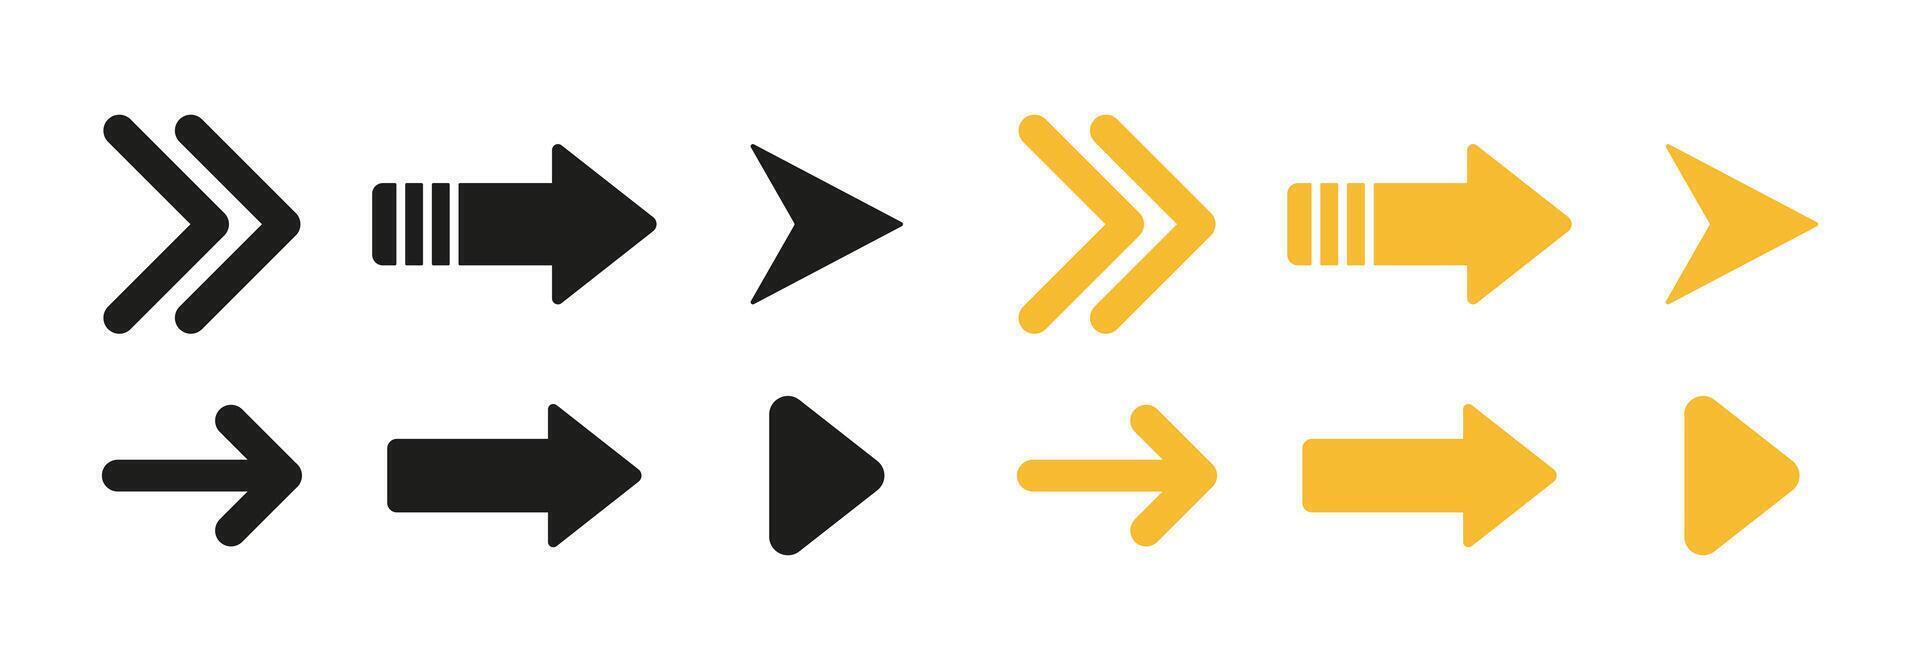 La Flèche Icônes ou symboles utilisé pour indiquant direction, la navigation, ou visuel représentation. flèches, direction, la navigation, symboles, indicateurs. vecteur